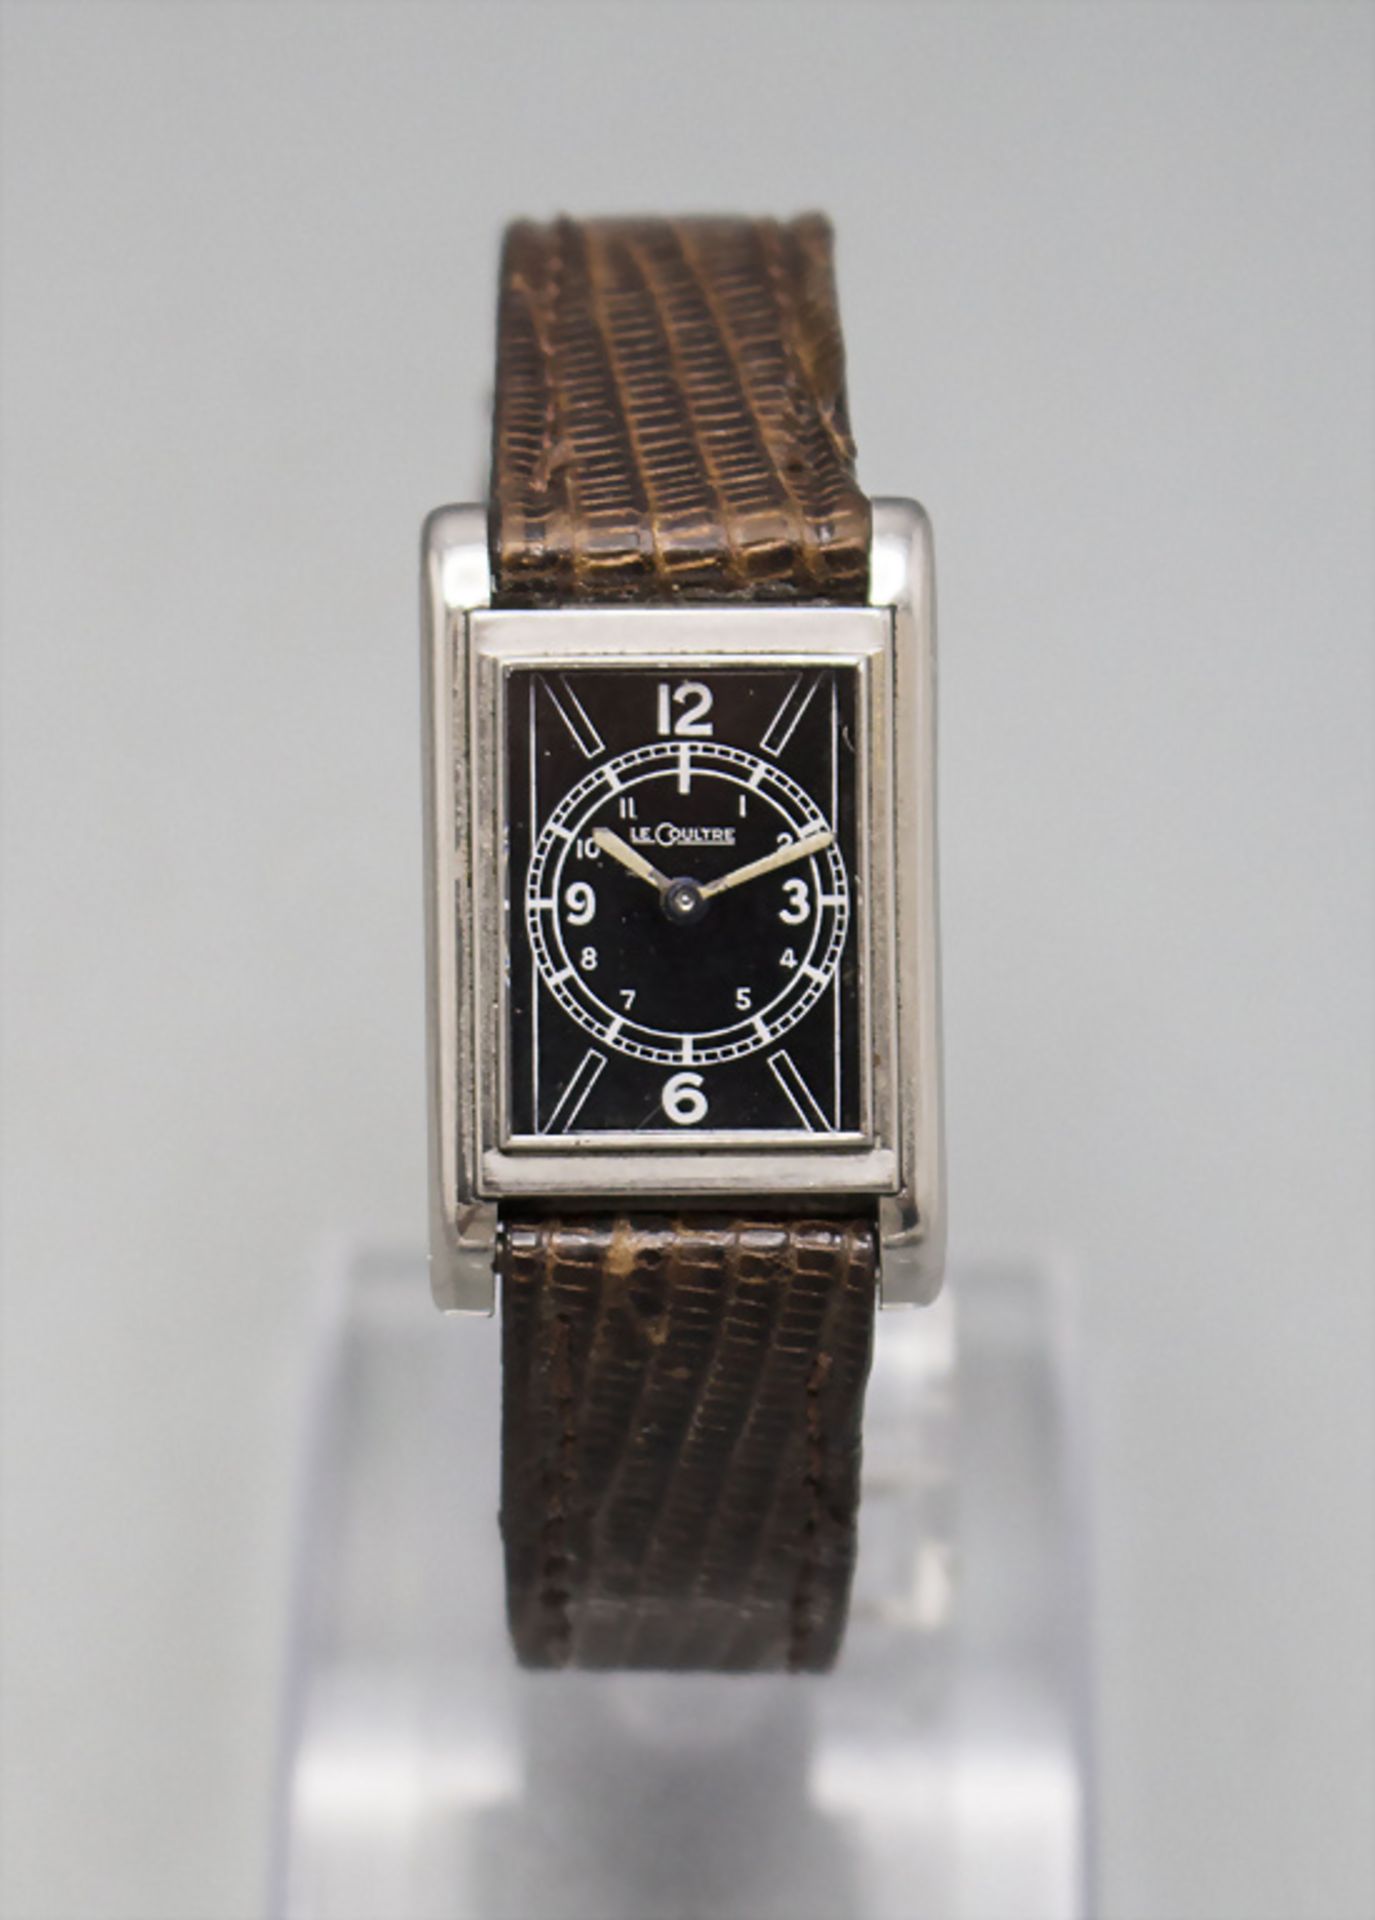 Art Déco Herrenarmbanduhr / A men's wristwatch, LeCoultre, um 1935 - Bild 2 aus 3